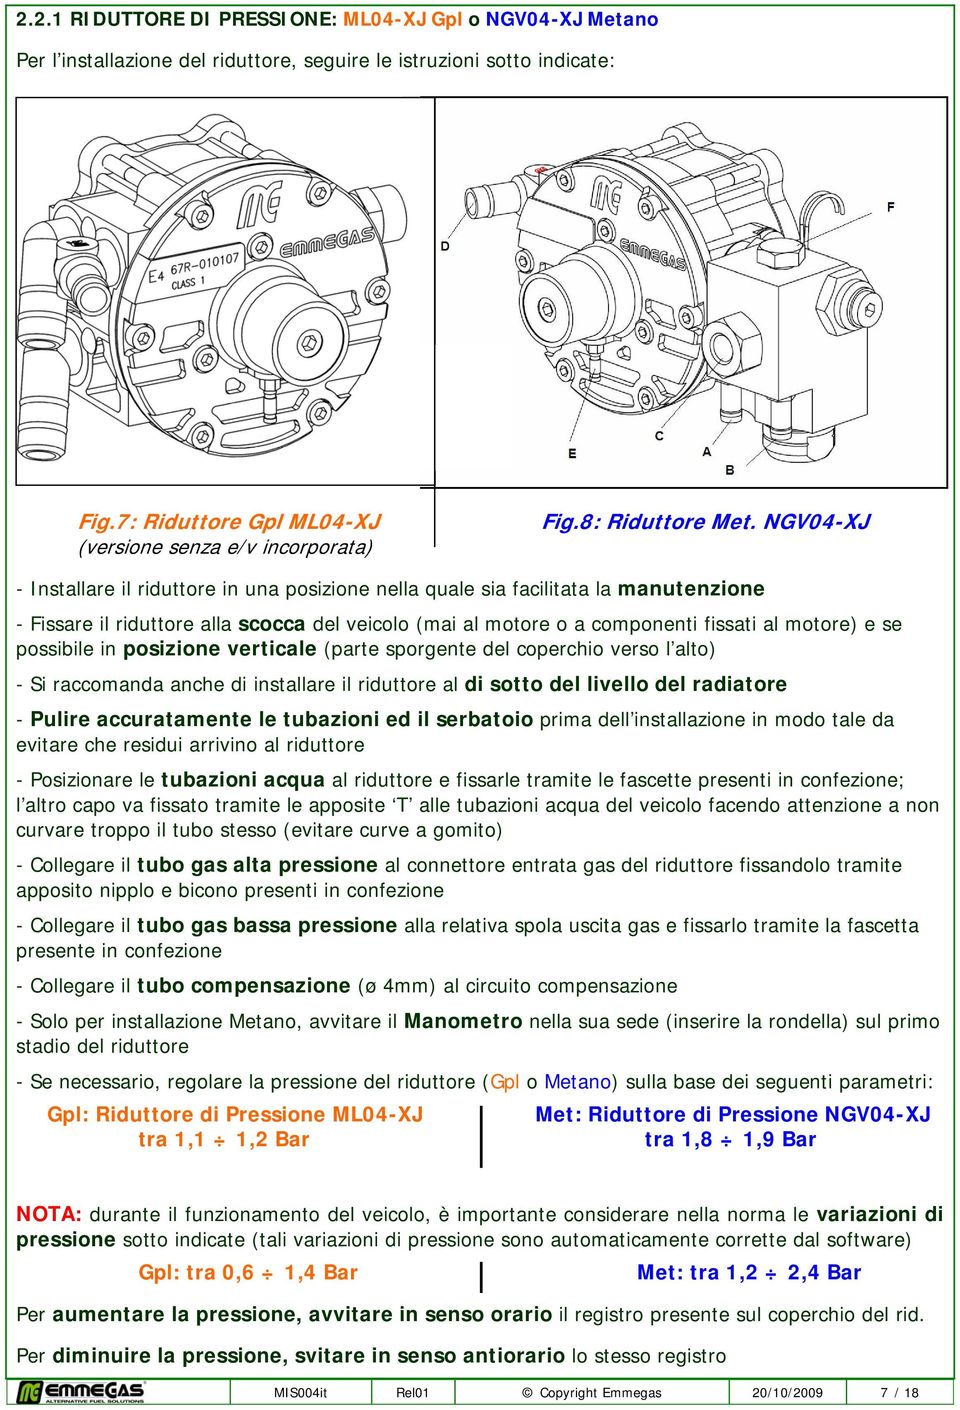 NGV04-XJ - Installare il riduttore in una posizione nella quale sia facilitata la manutenzione - Fissare il riduttore alla scocca del veicolo (mai al motore o a componenti fissati al motore) e se